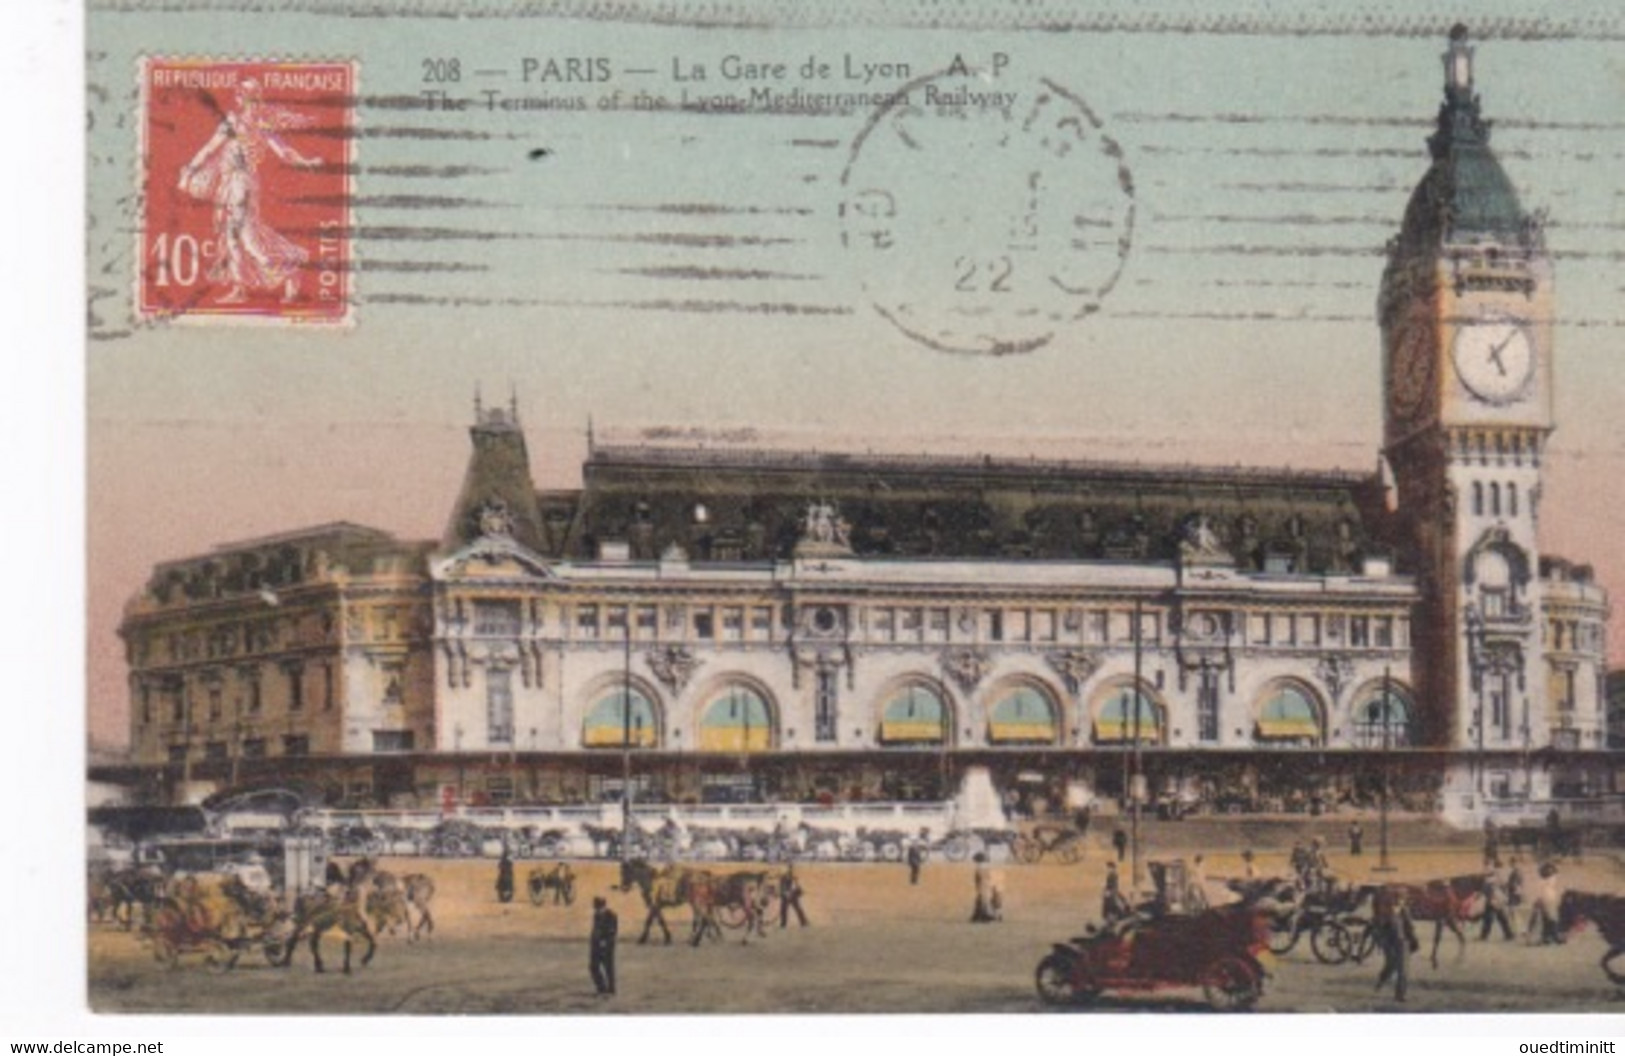 Paris Gare De Lyon Véhicules Anciens Et Divers Attelages. - Gares - Sans Trains